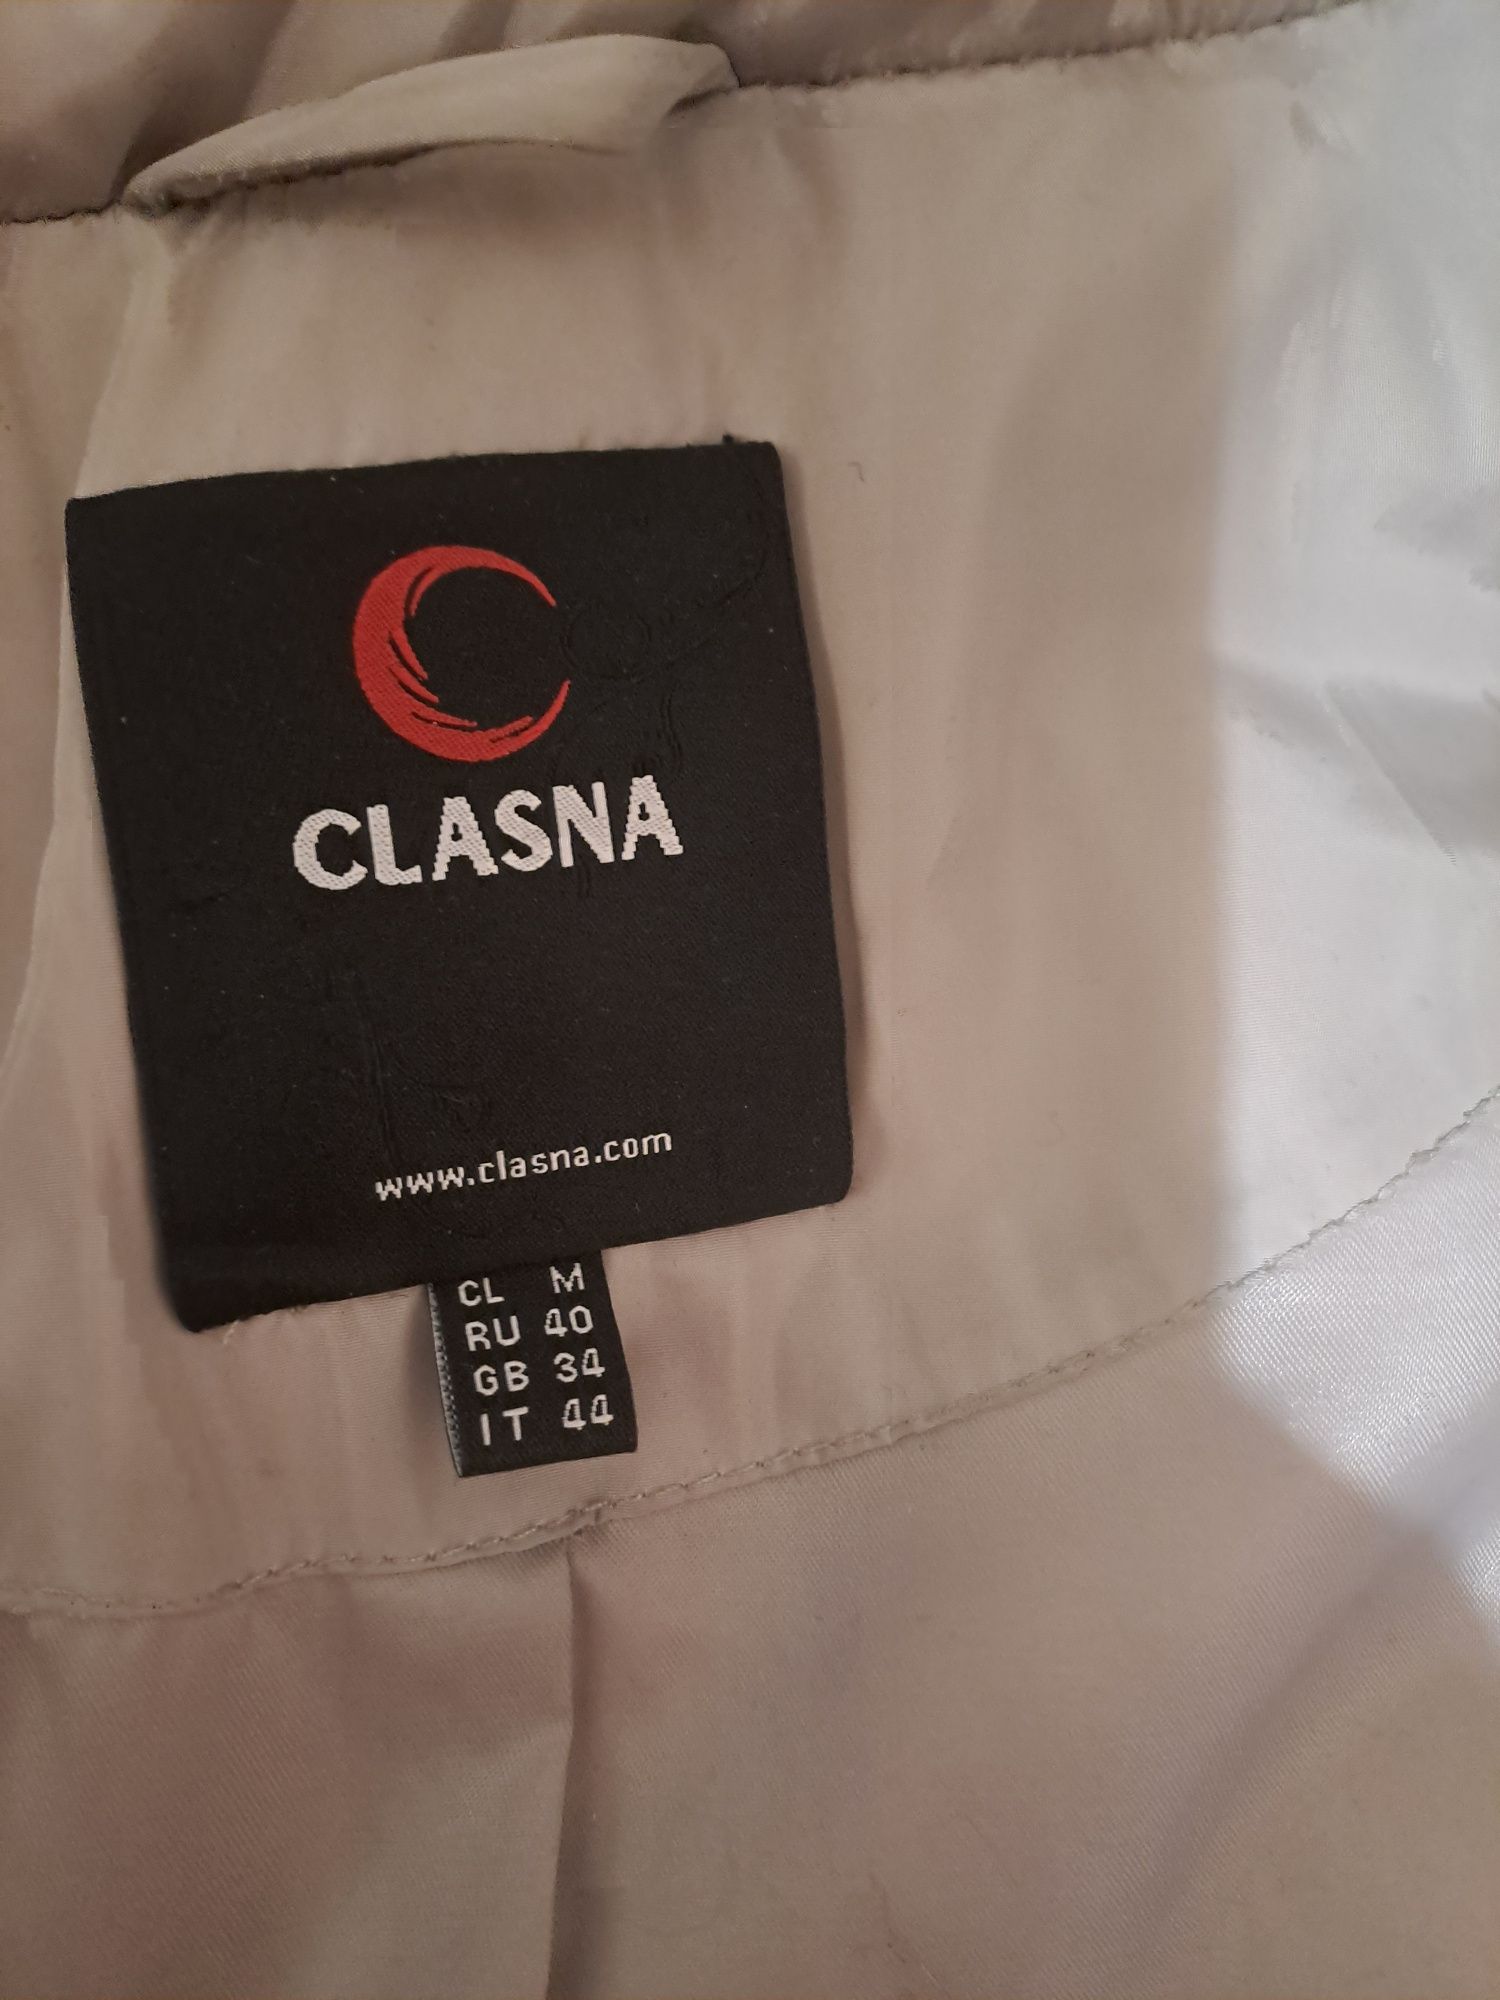 Пуховик жіночий бренду Clasna